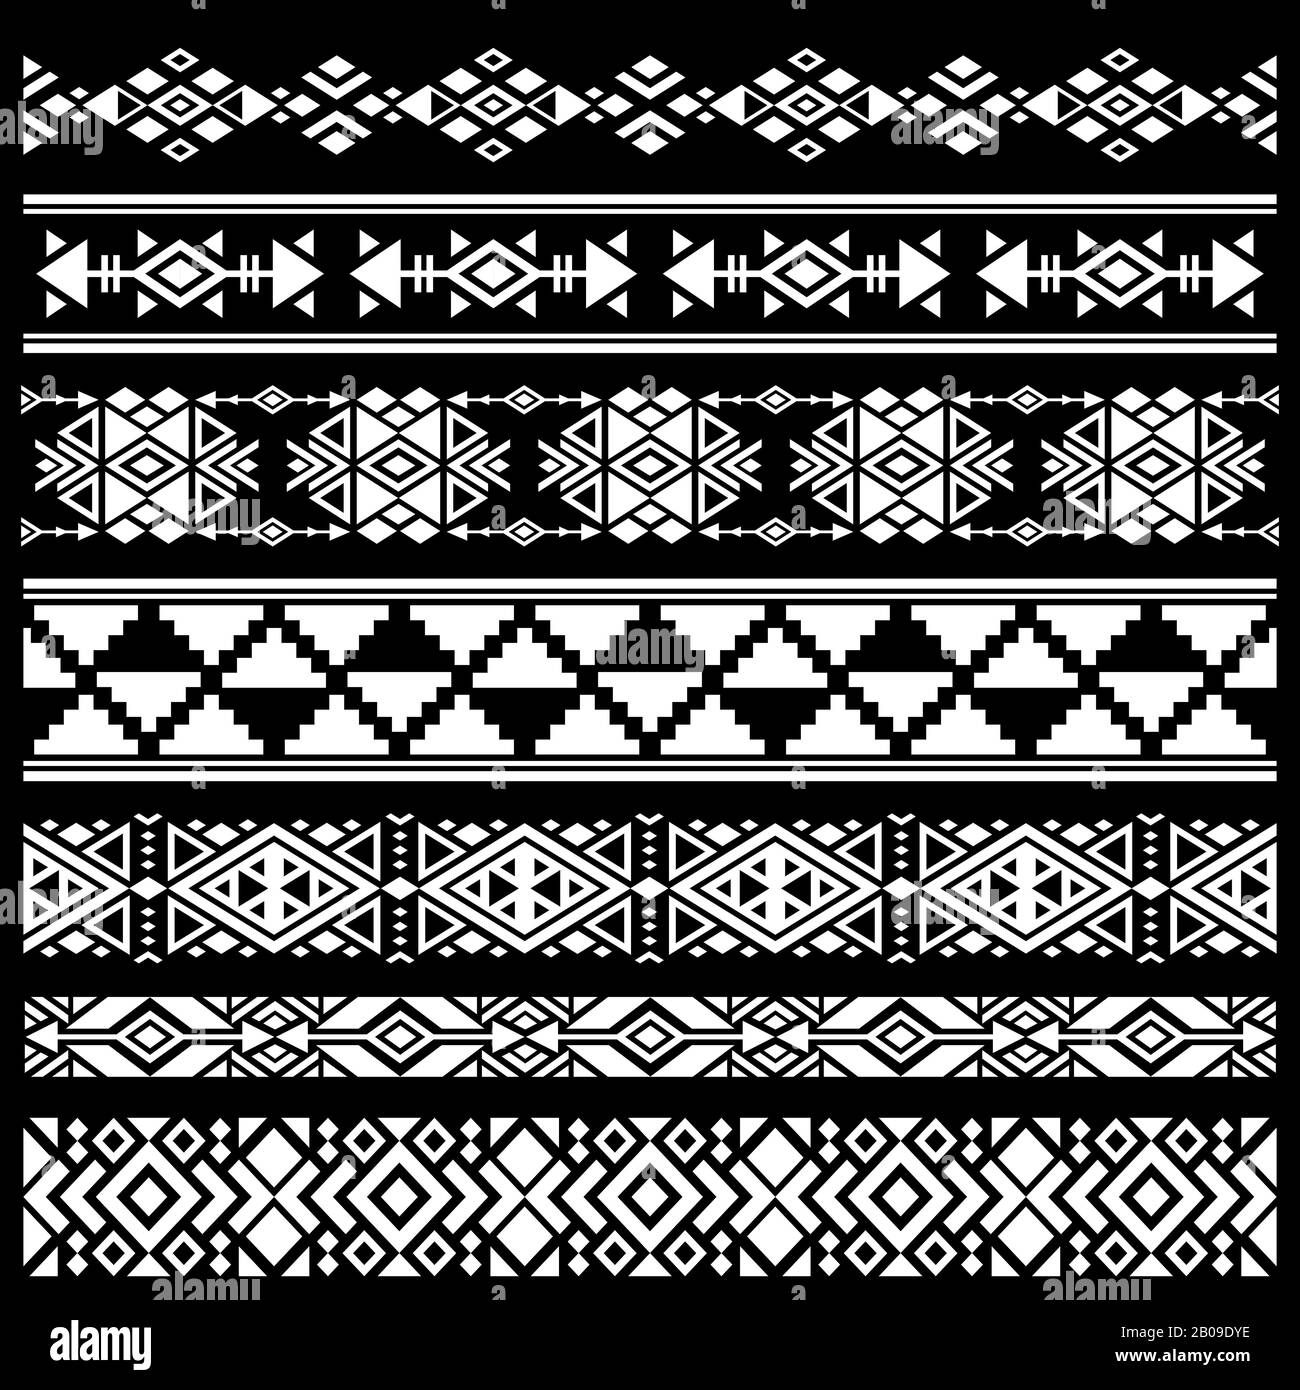 Mexikanische, amerikanische Tribal Art Decor Vektorbürsten, Grenzen. Schwarz weiß mexikanische Dekoration, antike geometrische mexikanische Dekorationsillustration Stock Vektor